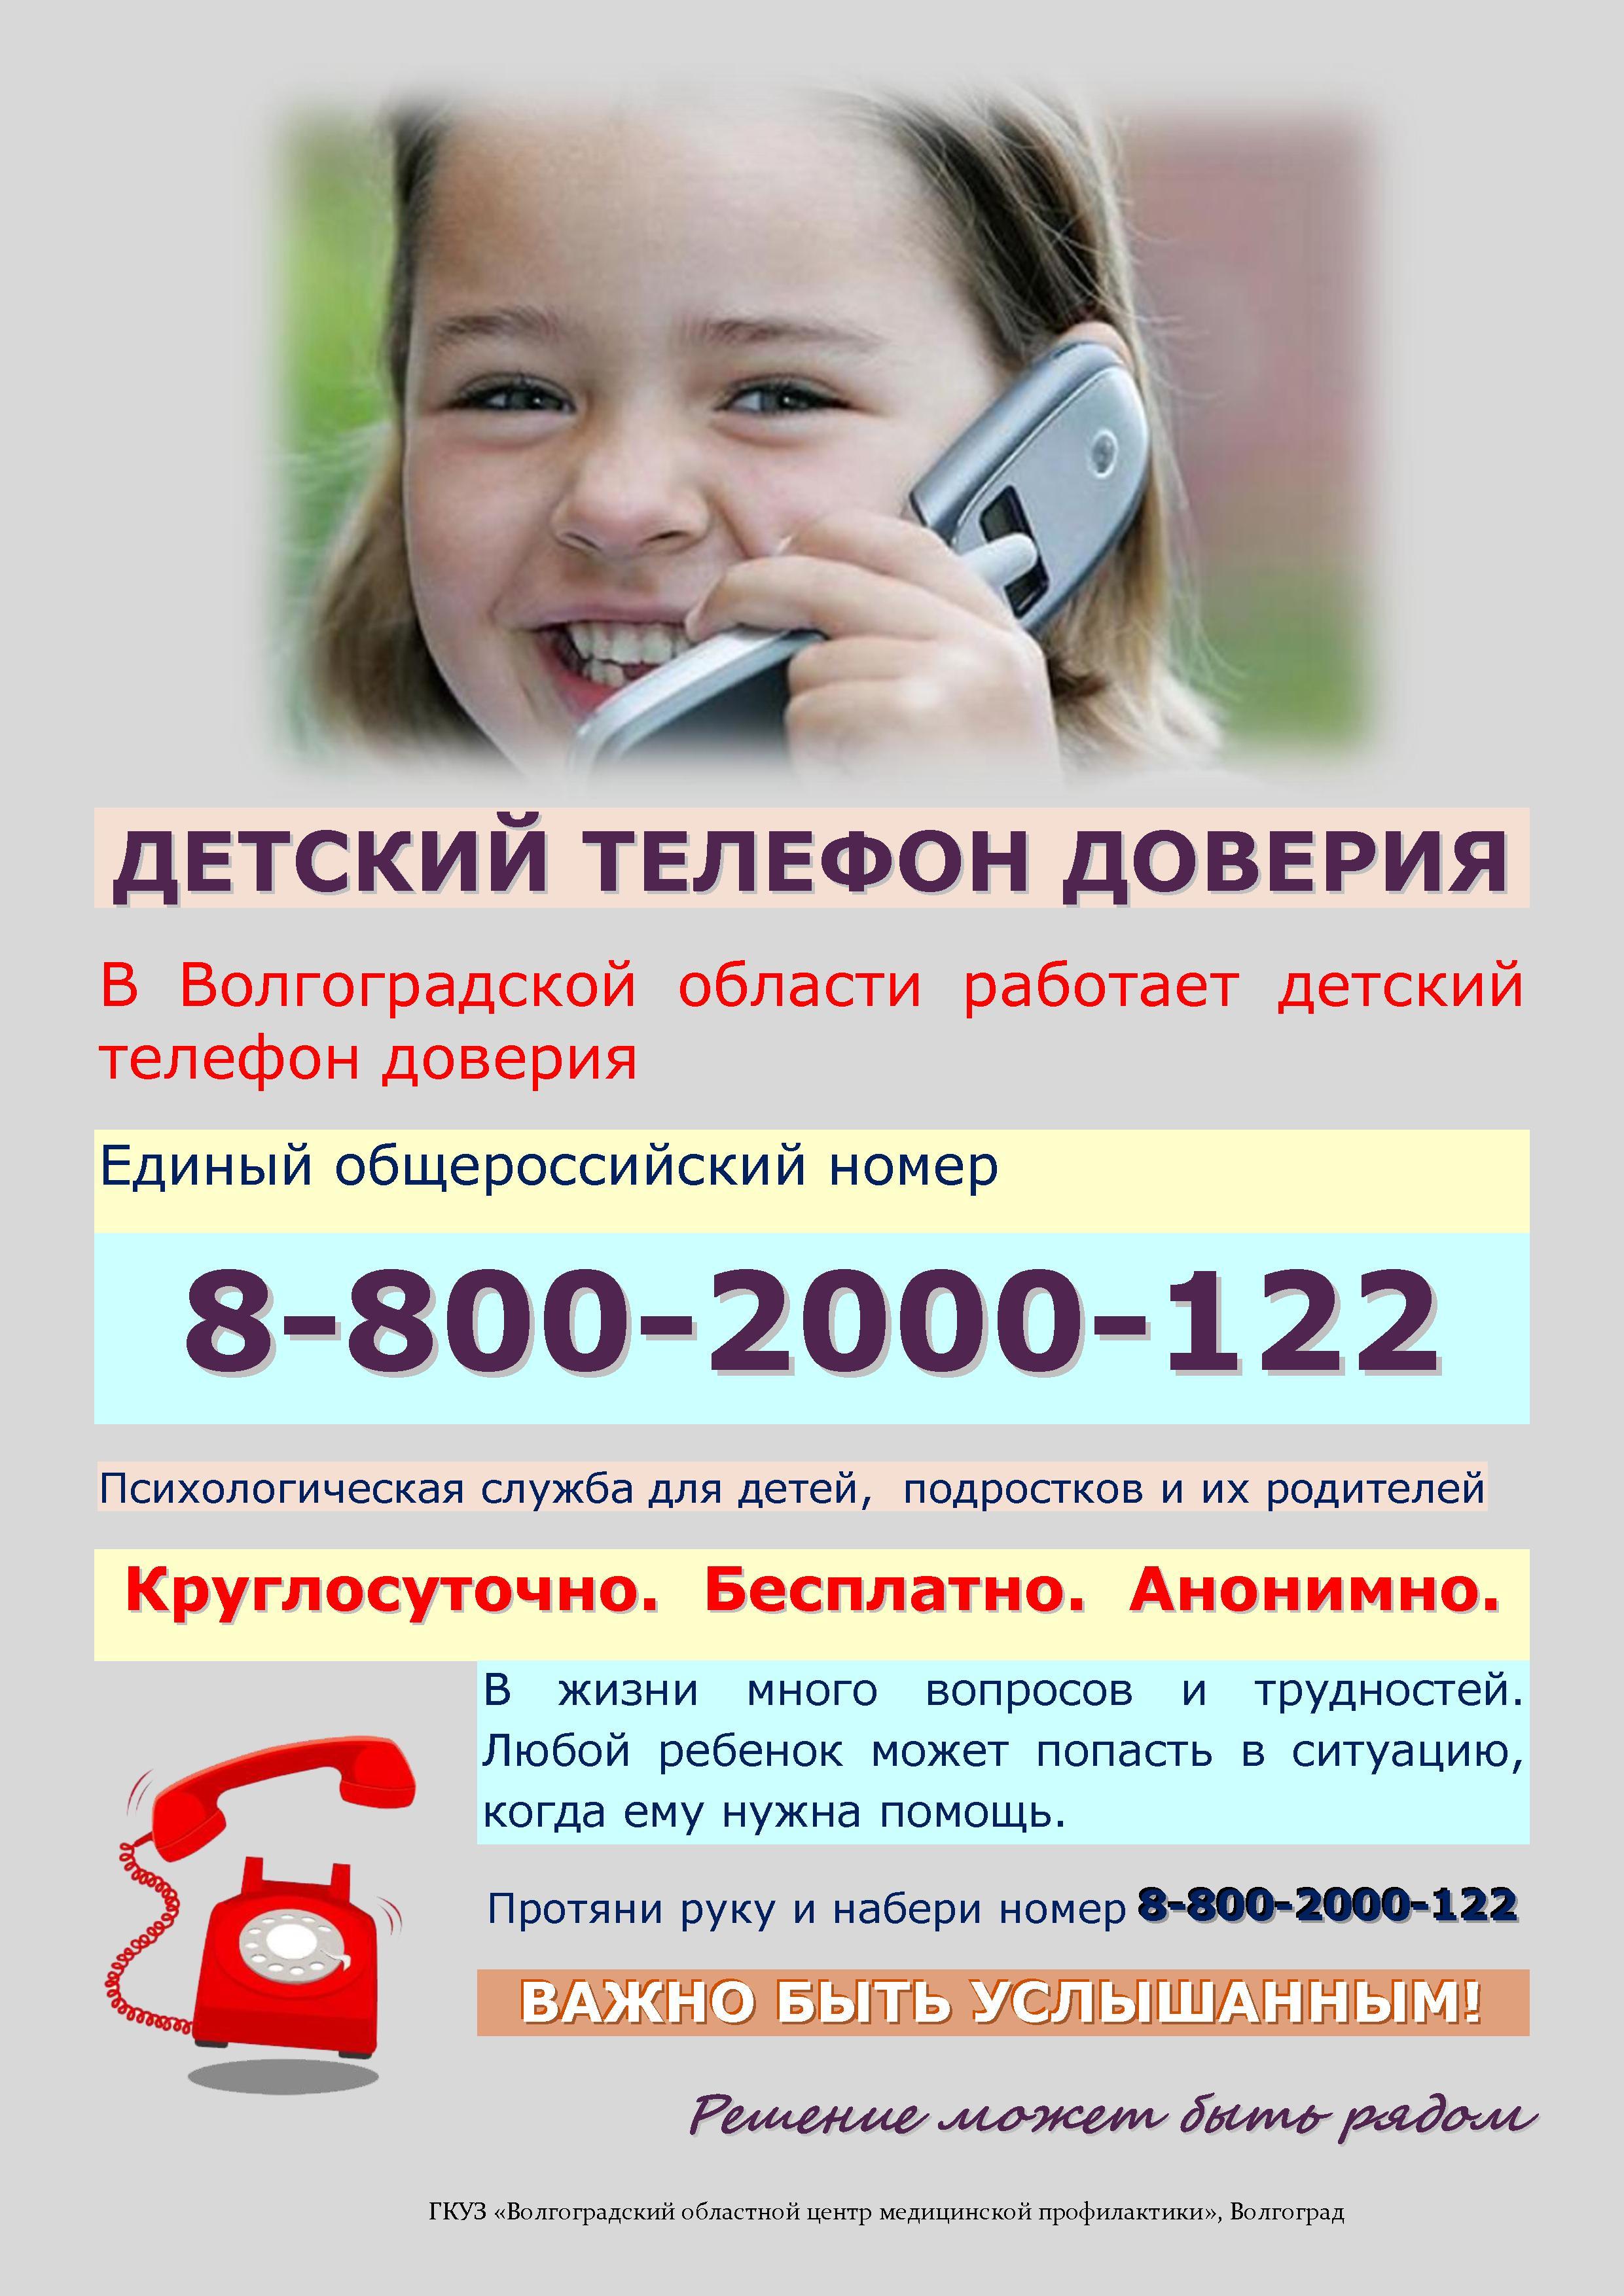 Номер телефона детской. Телефон доверия. Детский телефон доверия. Телефон доверия для детей подростков и их родителей. Служба детского телефона доверия.